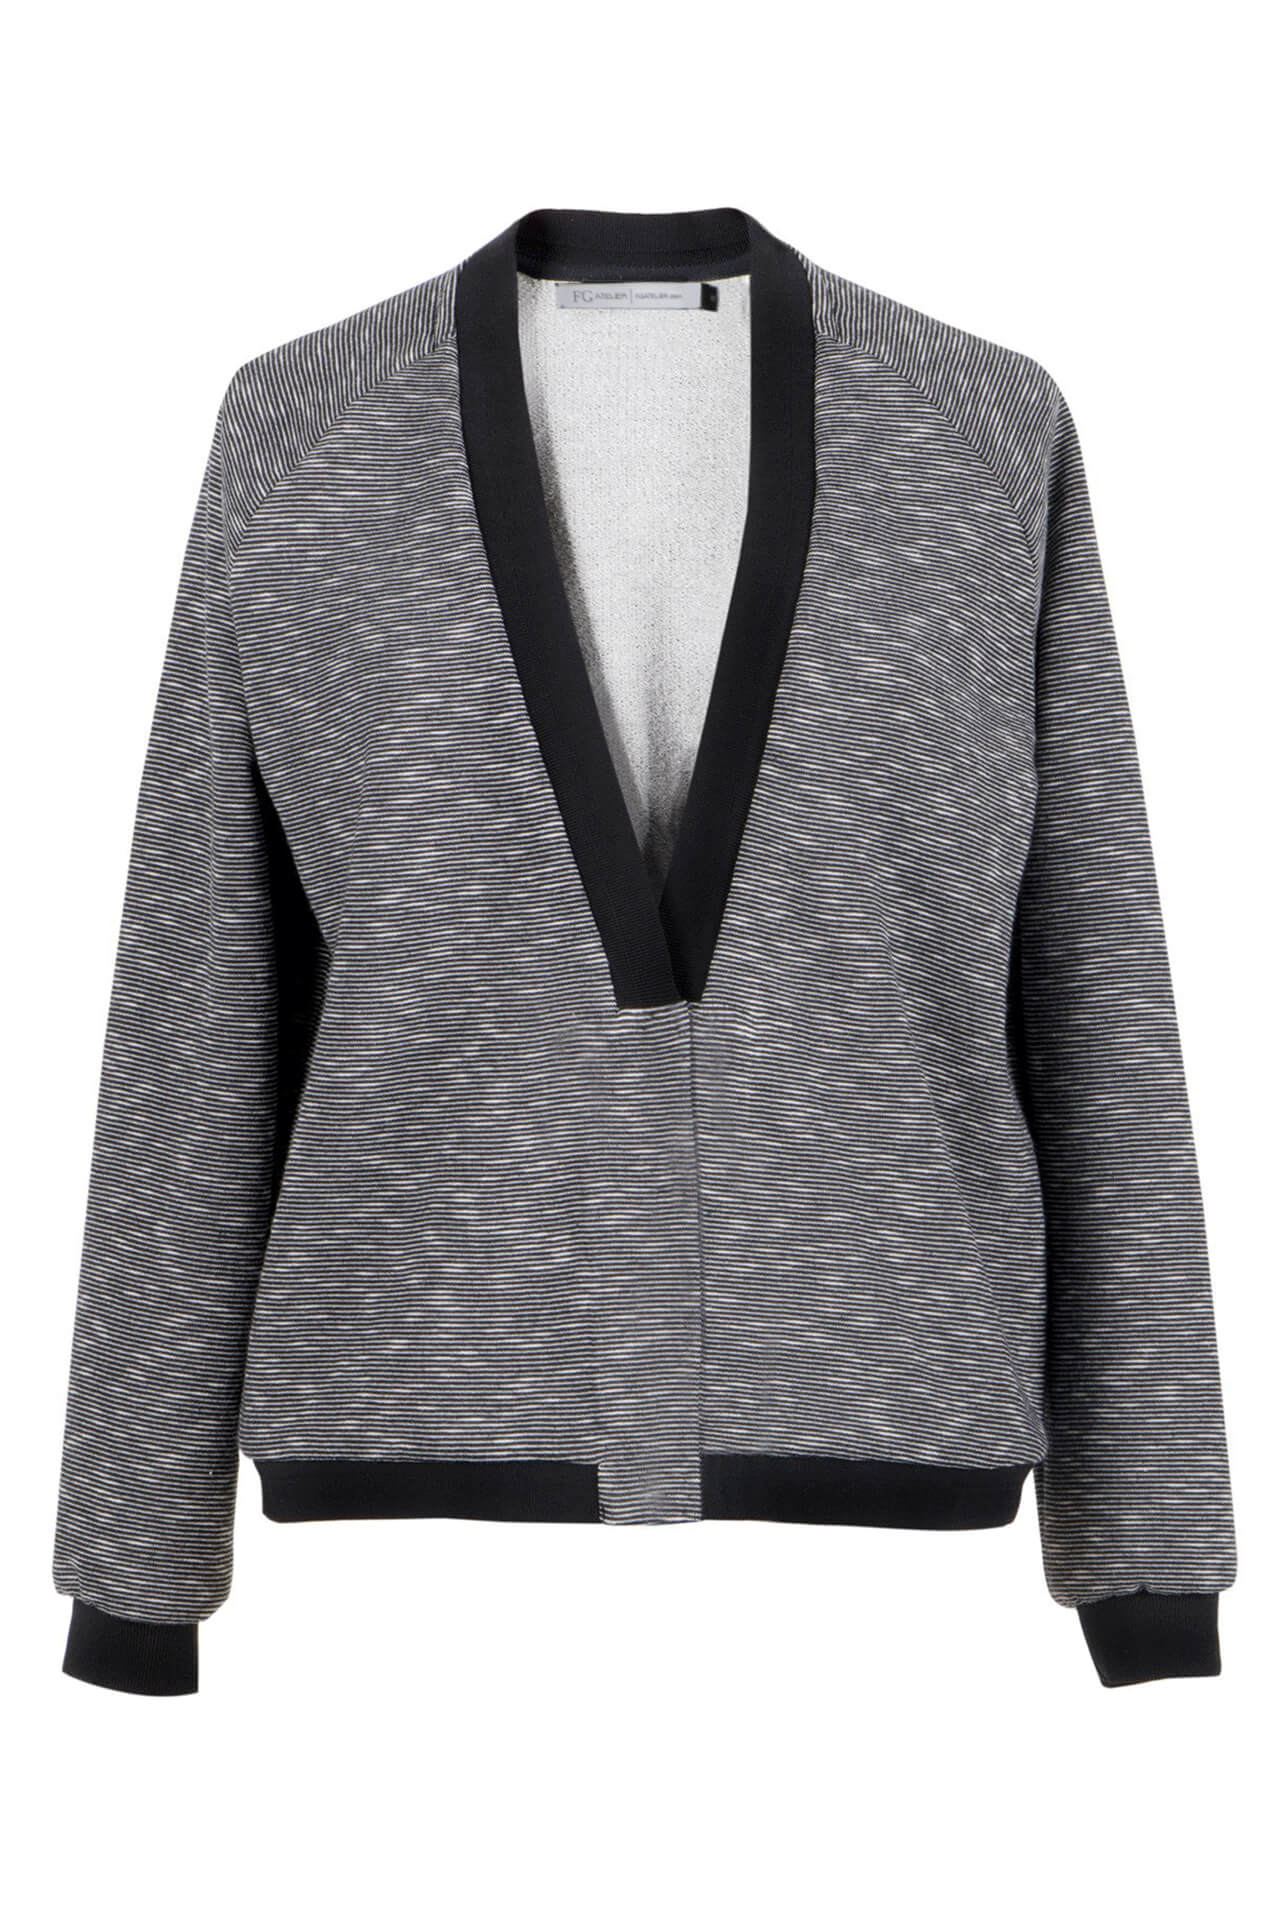 Grey & White Striped Jersey Blazer